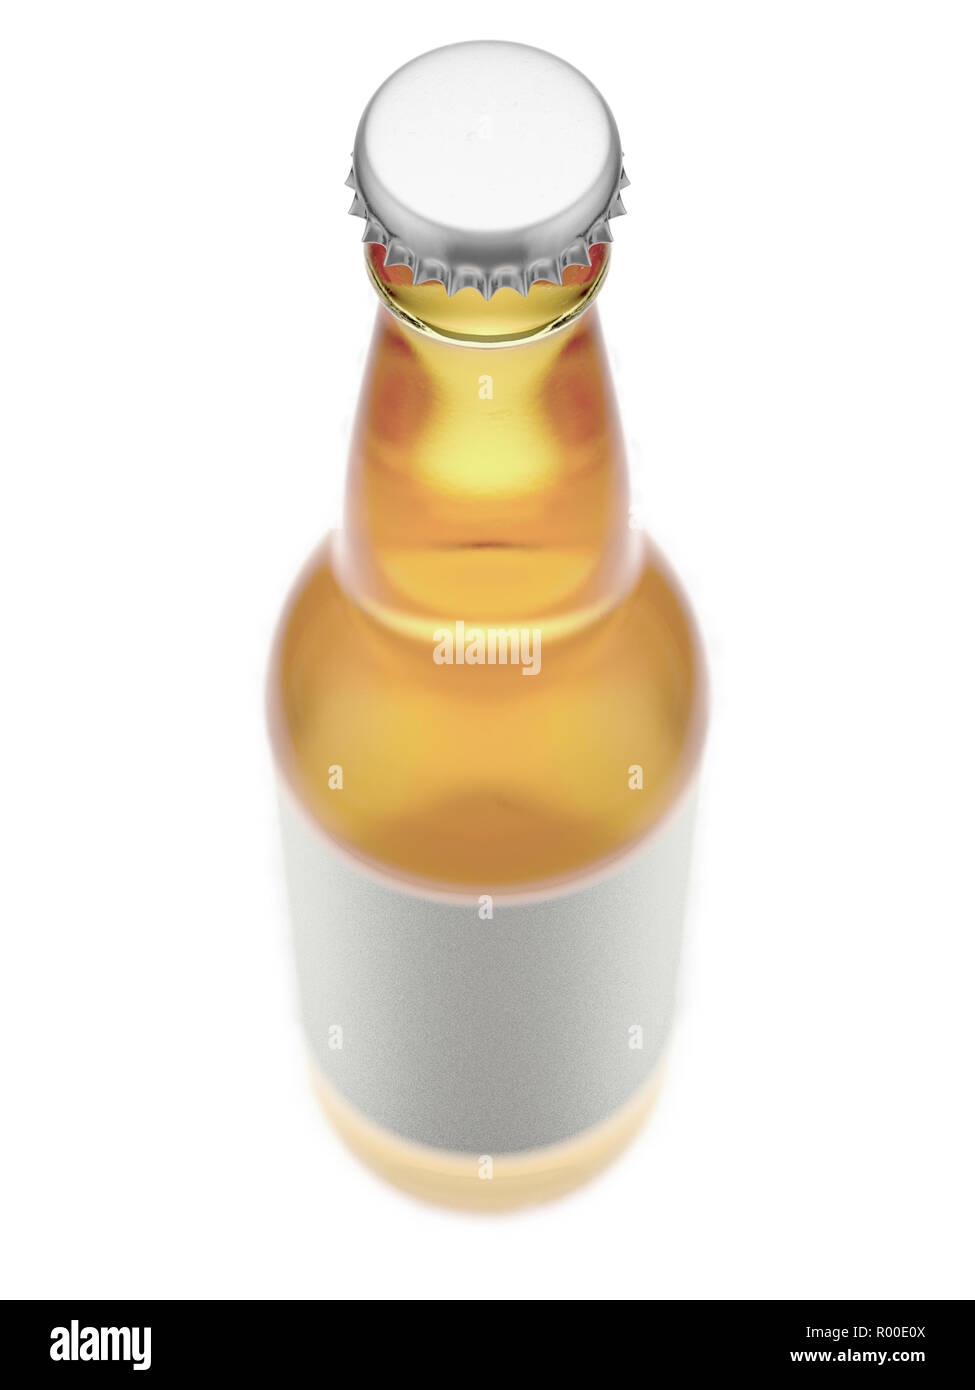 Ein klares Glas Bier oder Apfelwein Flasche mit ein leeres Etikett auf einem isolierten weißen studio Hintergrund - 3D-Rendering Stockfoto